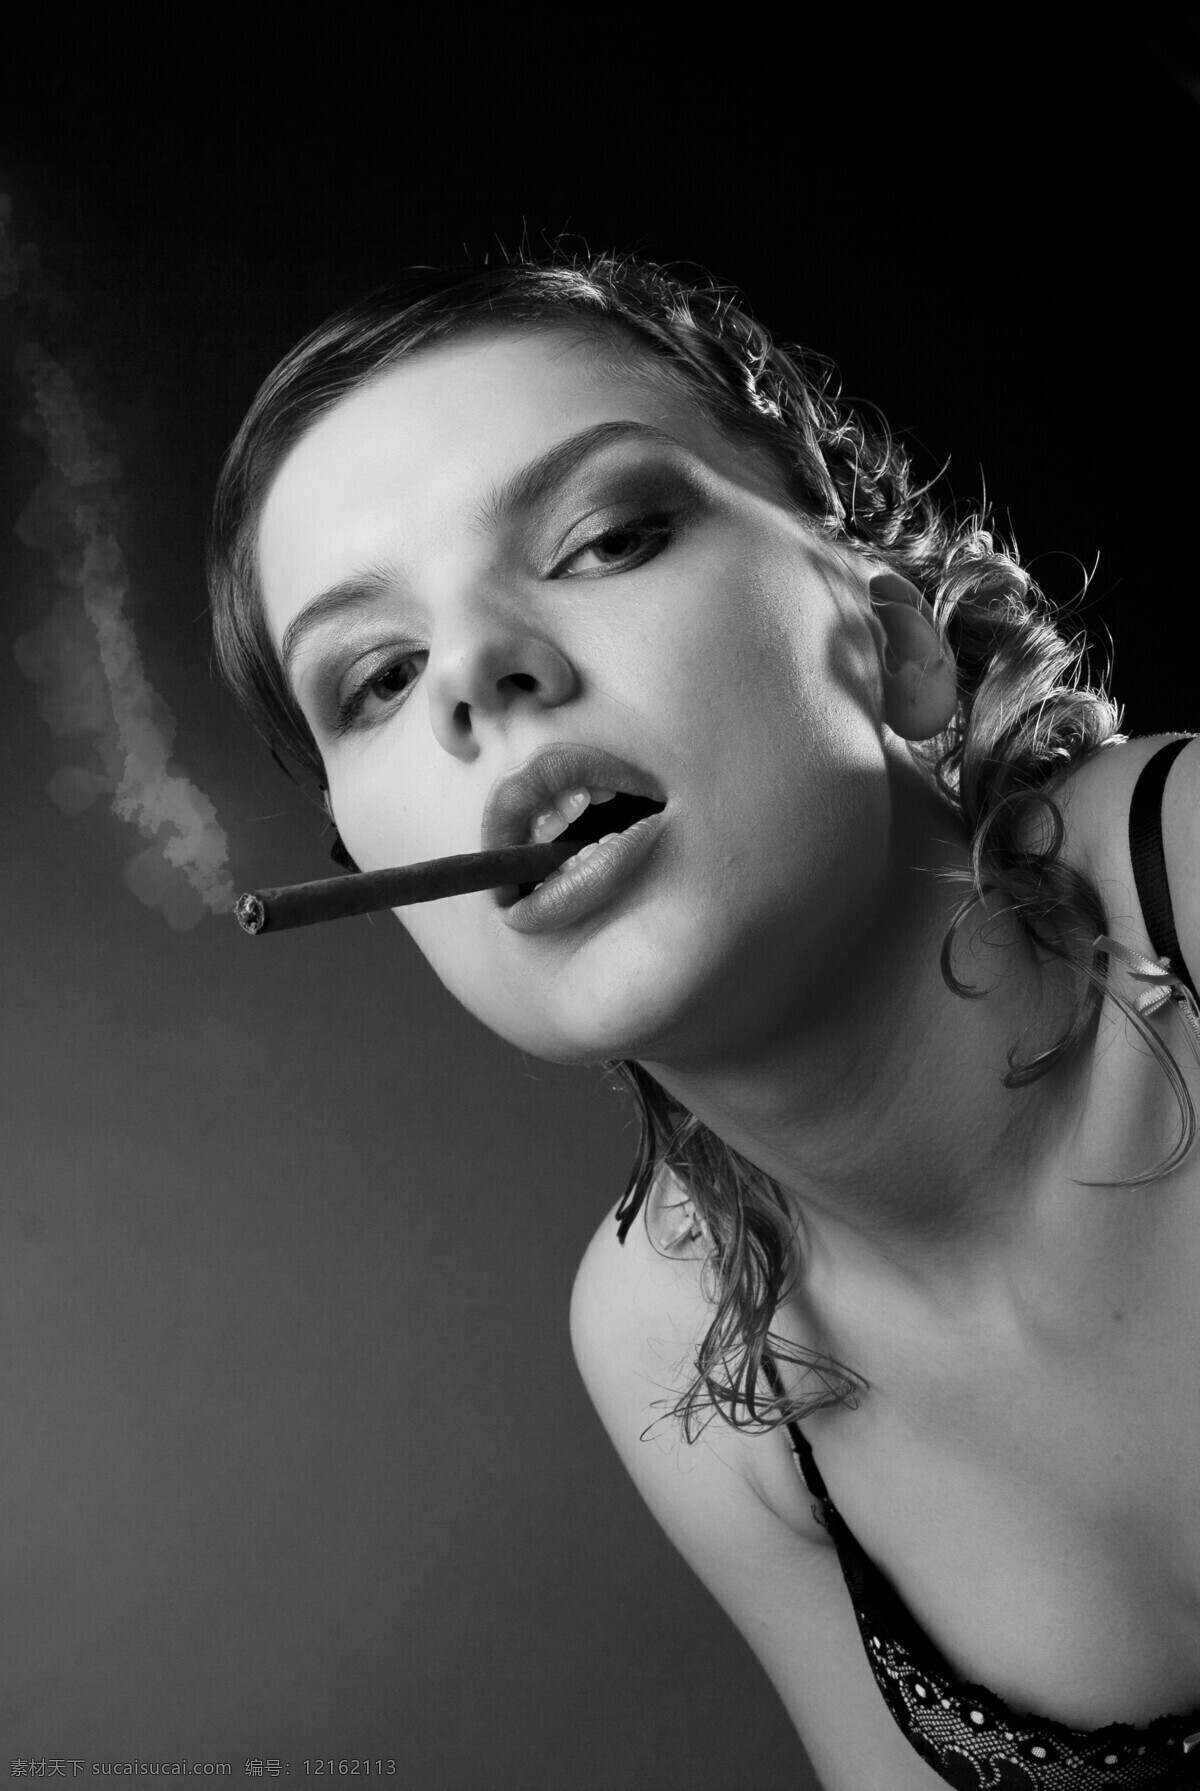 抽烟 性感美女 欧美 性感 美女 女人 创意美女 女性妇女 人物图库